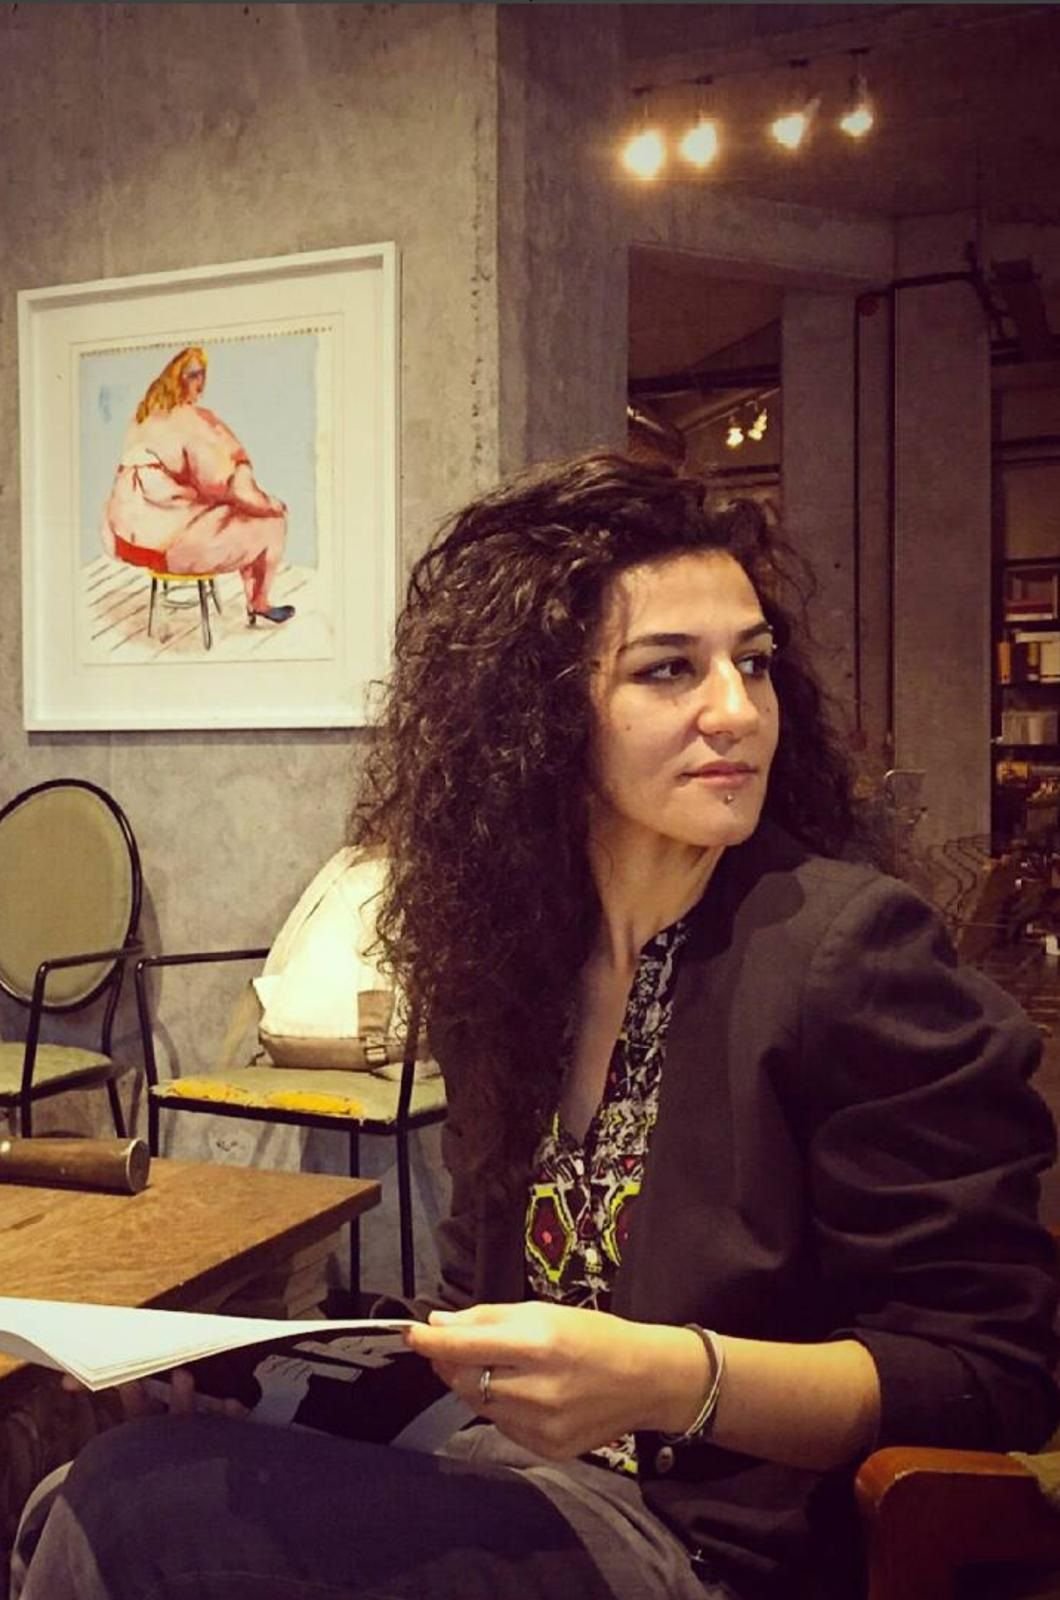 Yazar Aliye Aybüke Özdemir’in ‘Masabaşı Kadını’ adlı şiir kitabı büyük ilgi gördü.